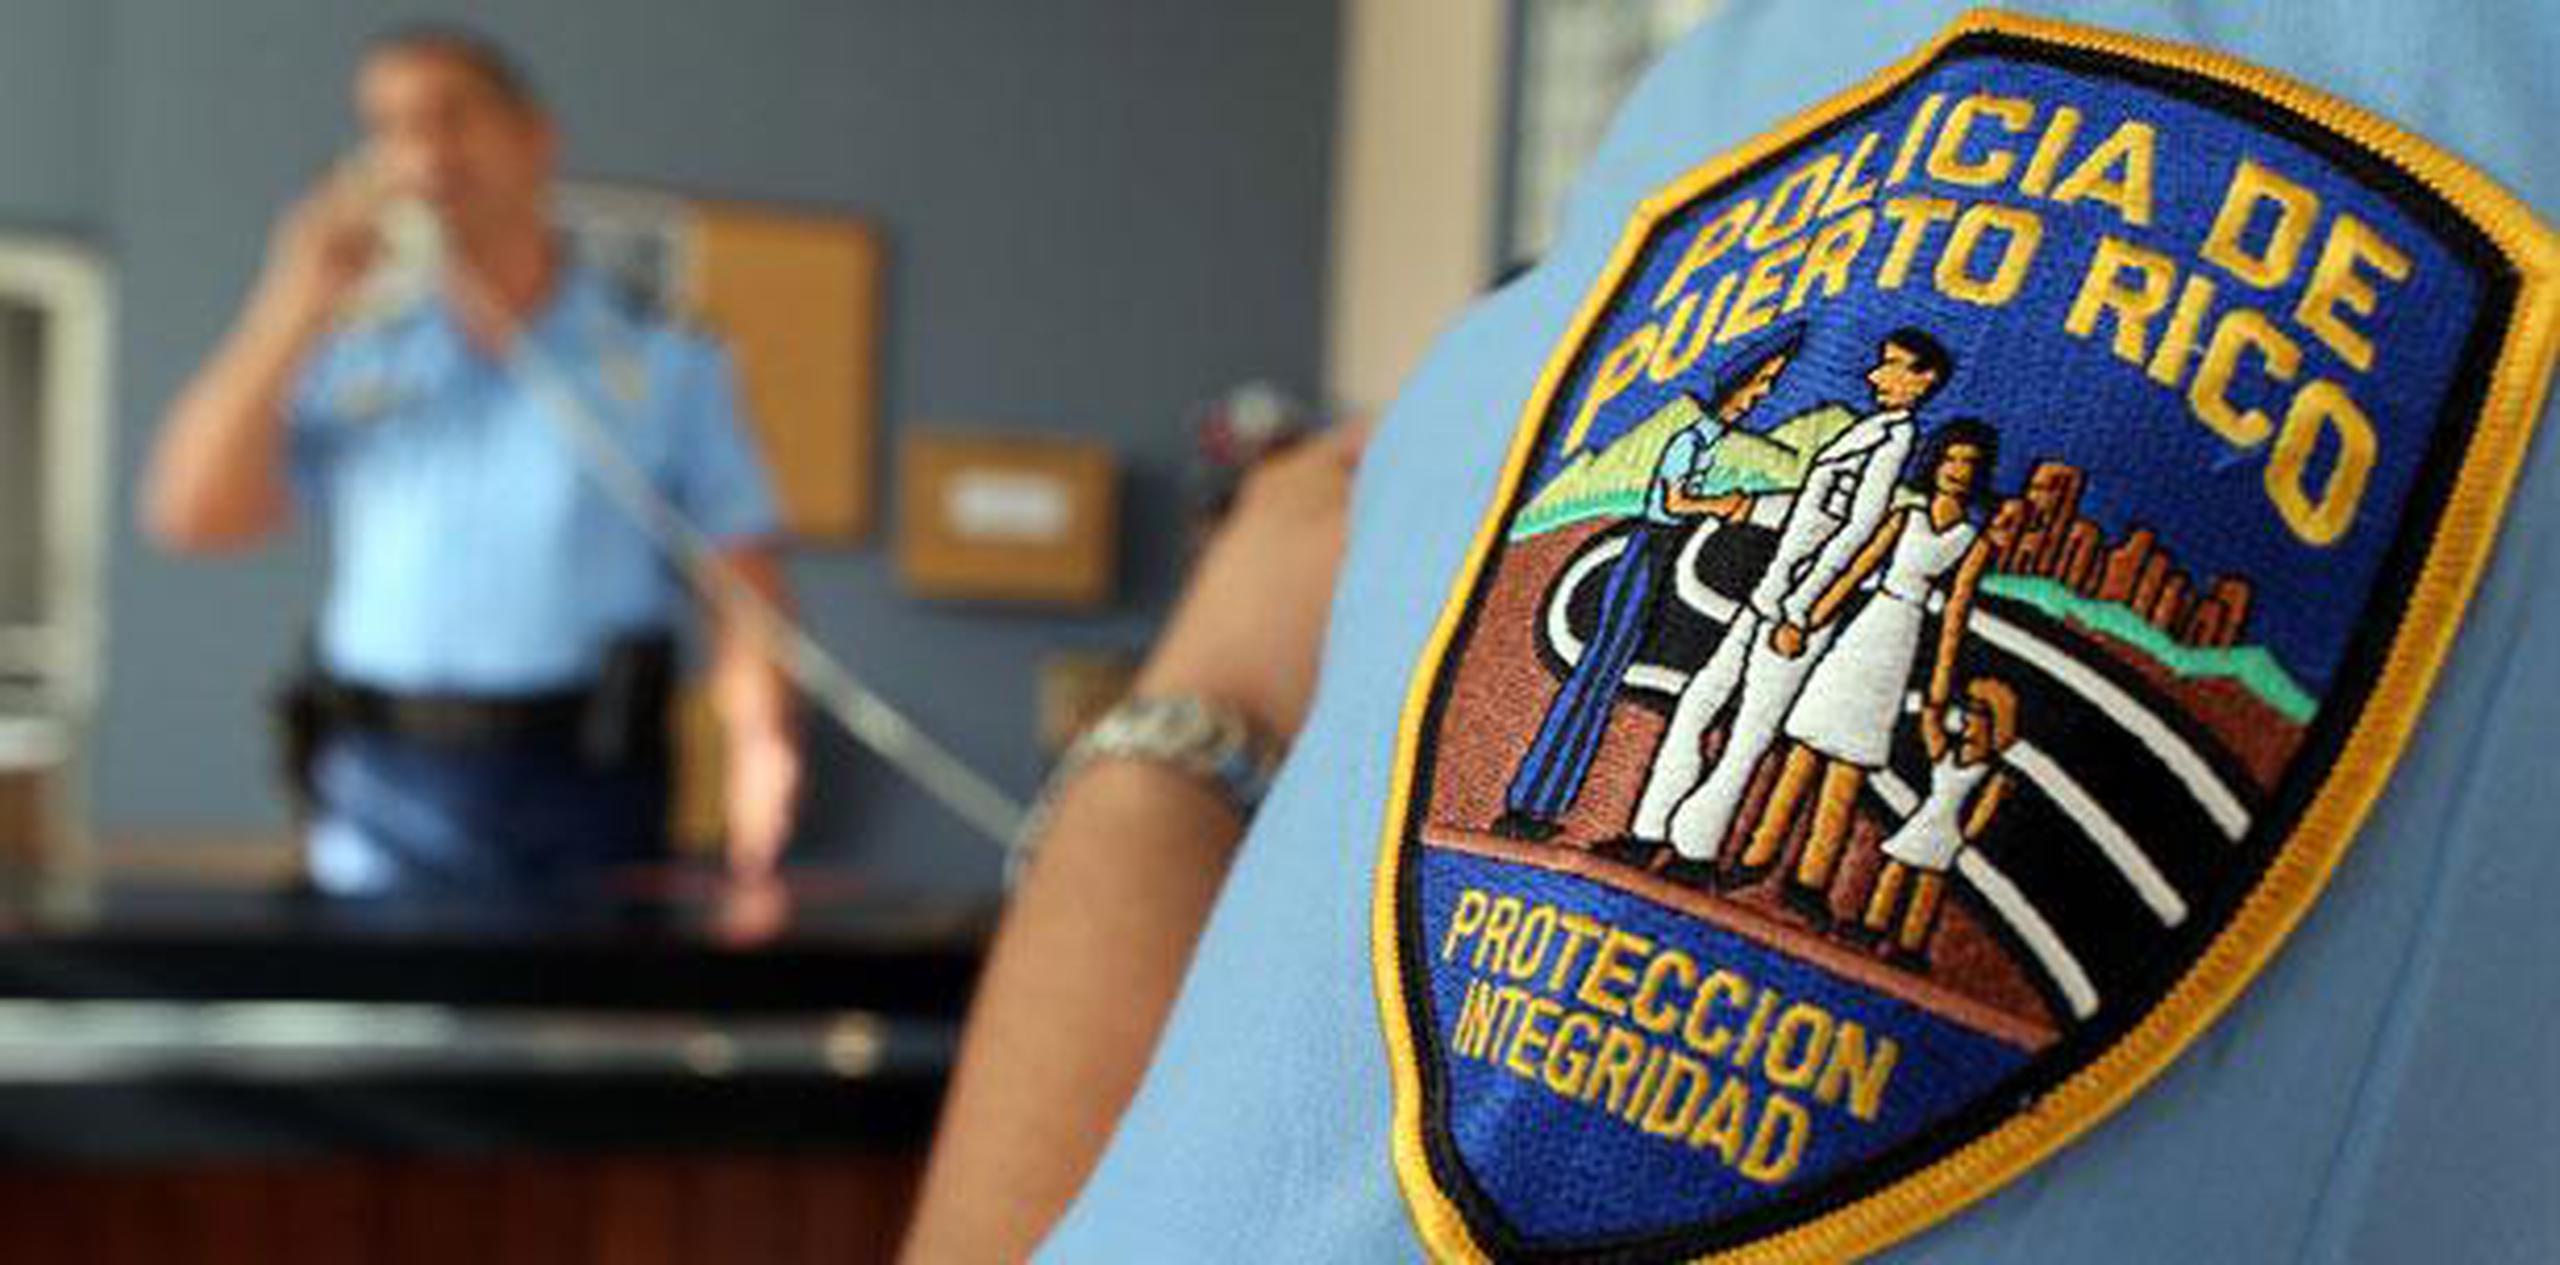 El presunto agresor se encuentra detenido en el cuartel de Puerto Nuevo, mientras que el herido se encuentra en condición crítica en el Centro Médico en Río Piedras.